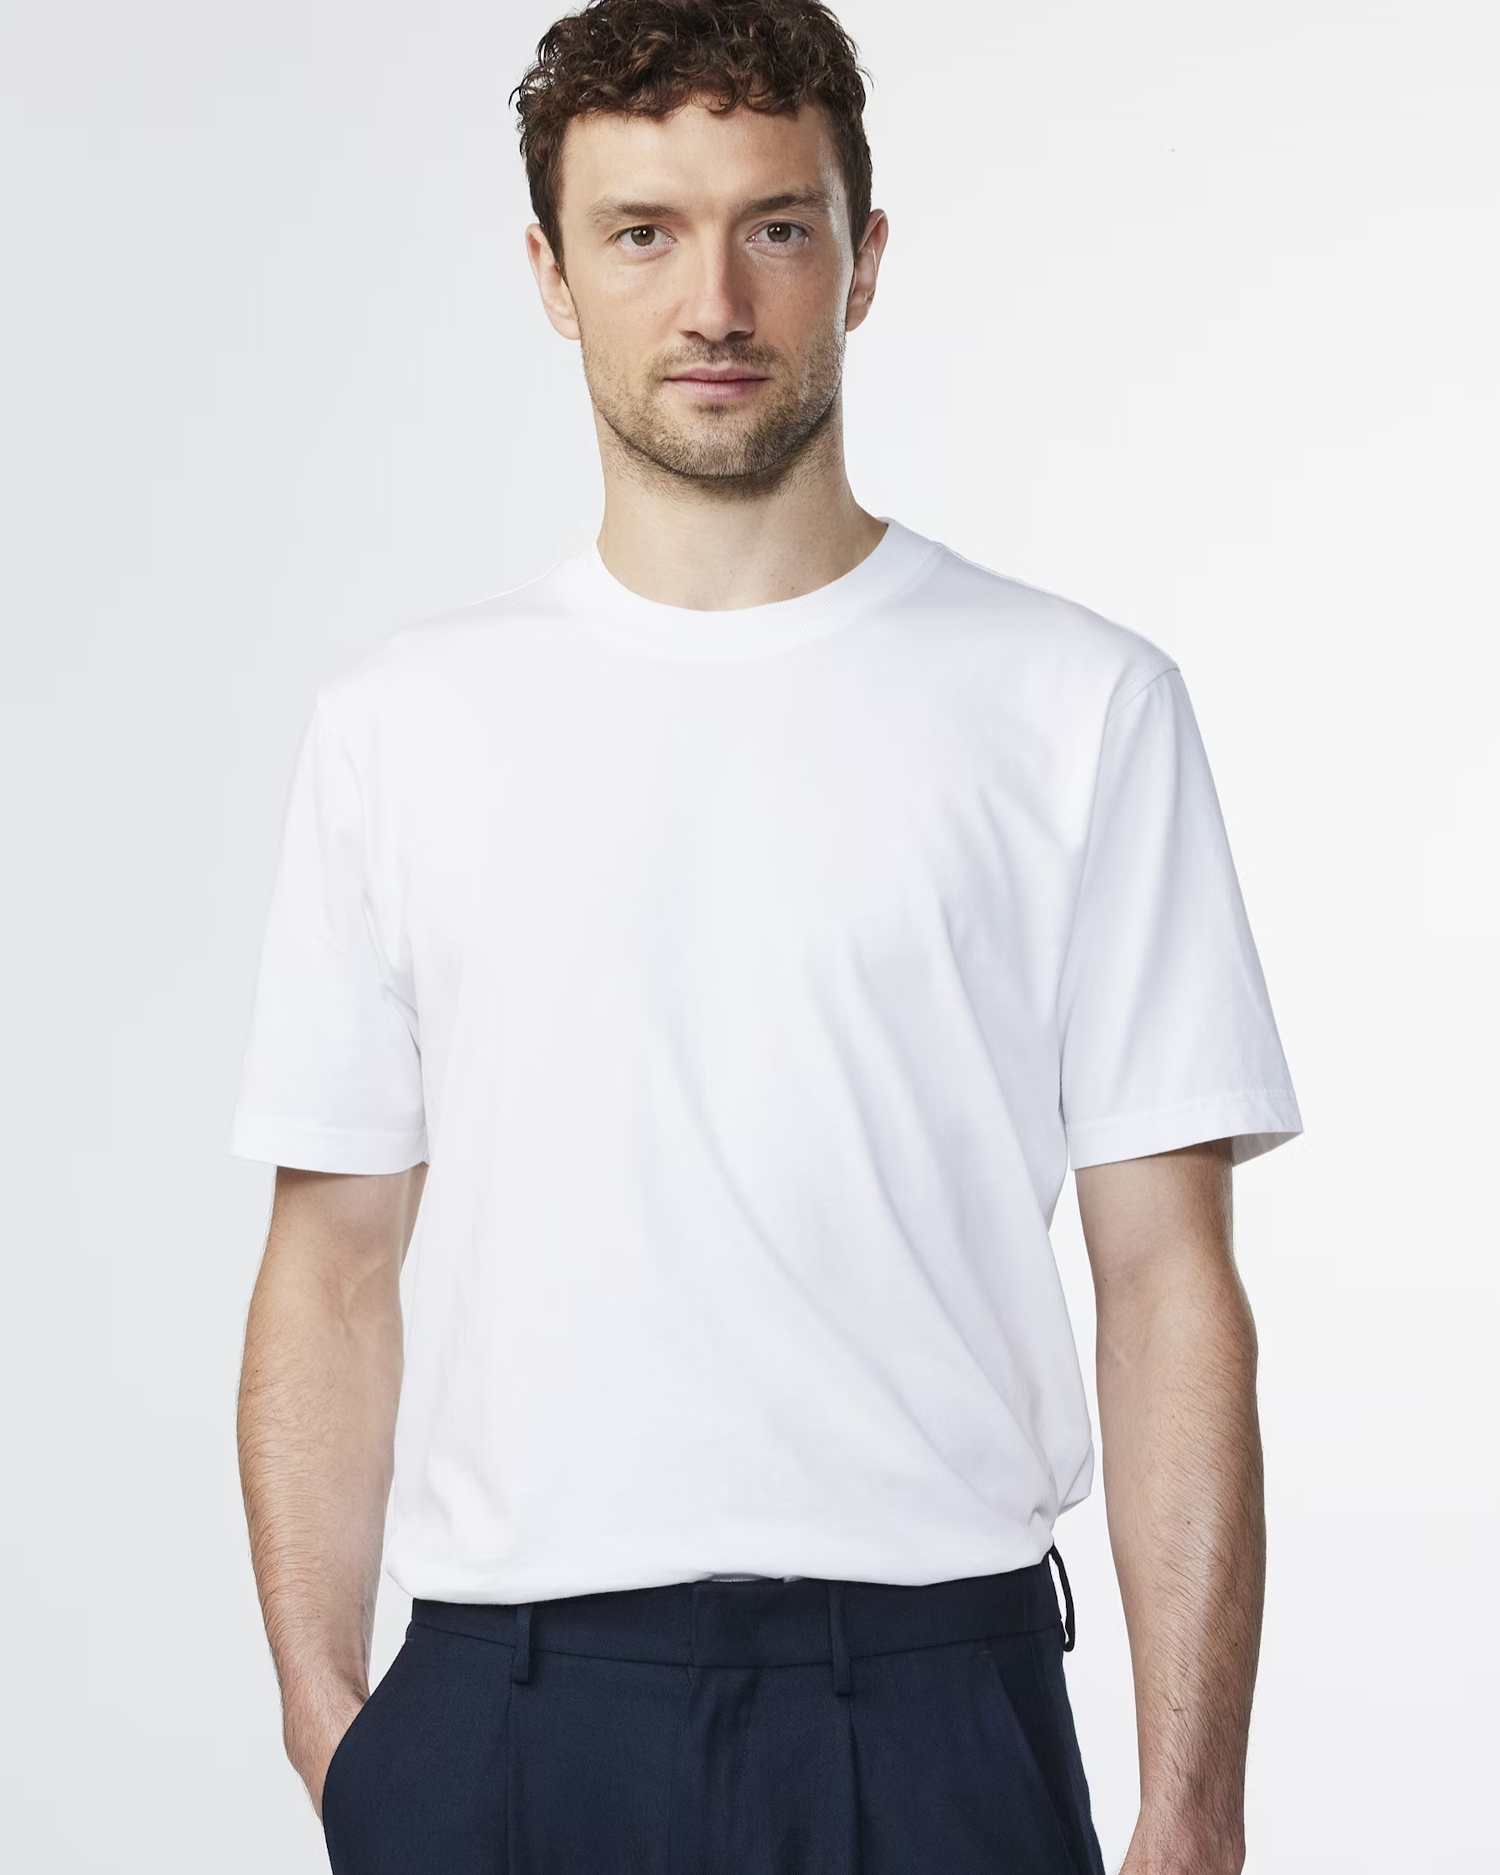 T-shirt Adam 3209 - White